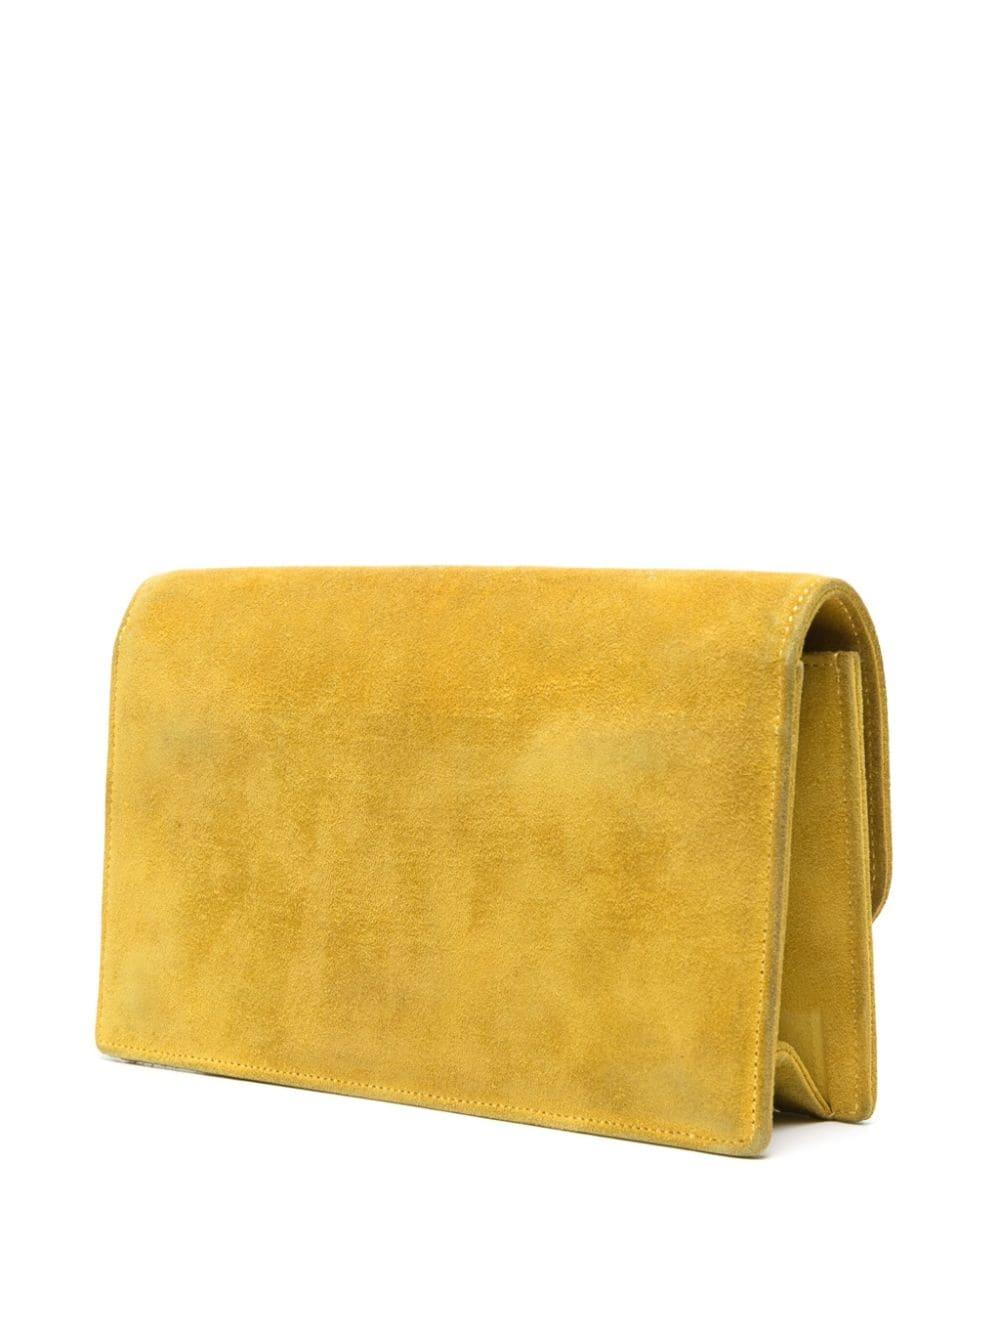 Gelbe Veloursleder-Clutchbag von Hermès mit goldfarbener Logoprägung auf der Innenseite, Hauptfach, Steckfach innen, Innentasche mit Reißverschluss, Lederfutter, Umschlagklappe mit Magnetverschluss.
Circa 1970er Jahre 
In gutem Vintage-Zustand.